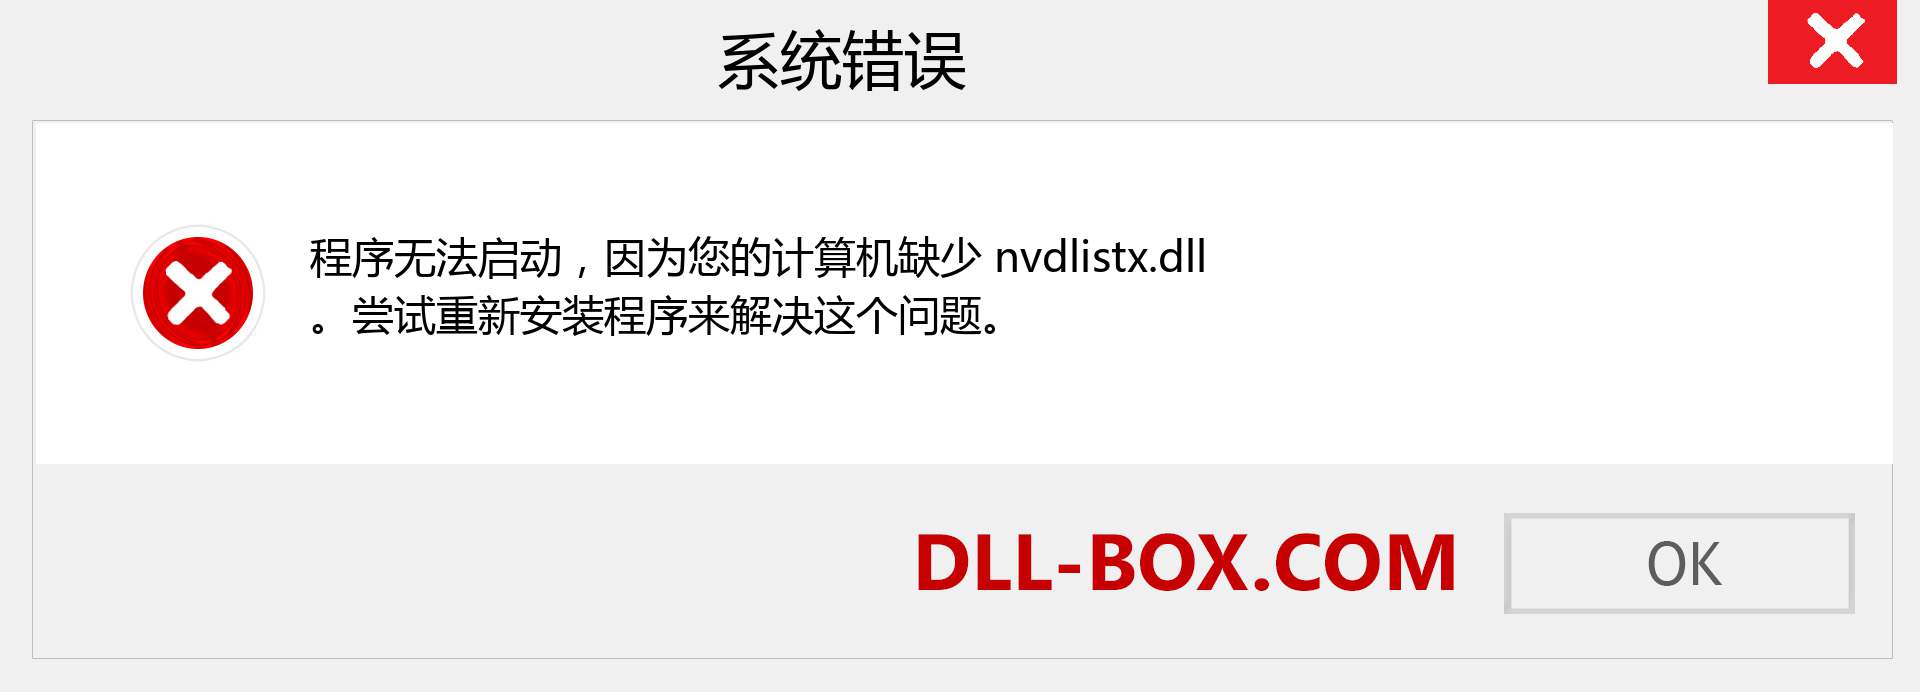 nvdlistx.dll 文件丢失？。 适用于 Windows 7、8、10 的下载 - 修复 Windows、照片、图像上的 nvdlistx dll 丢失错误